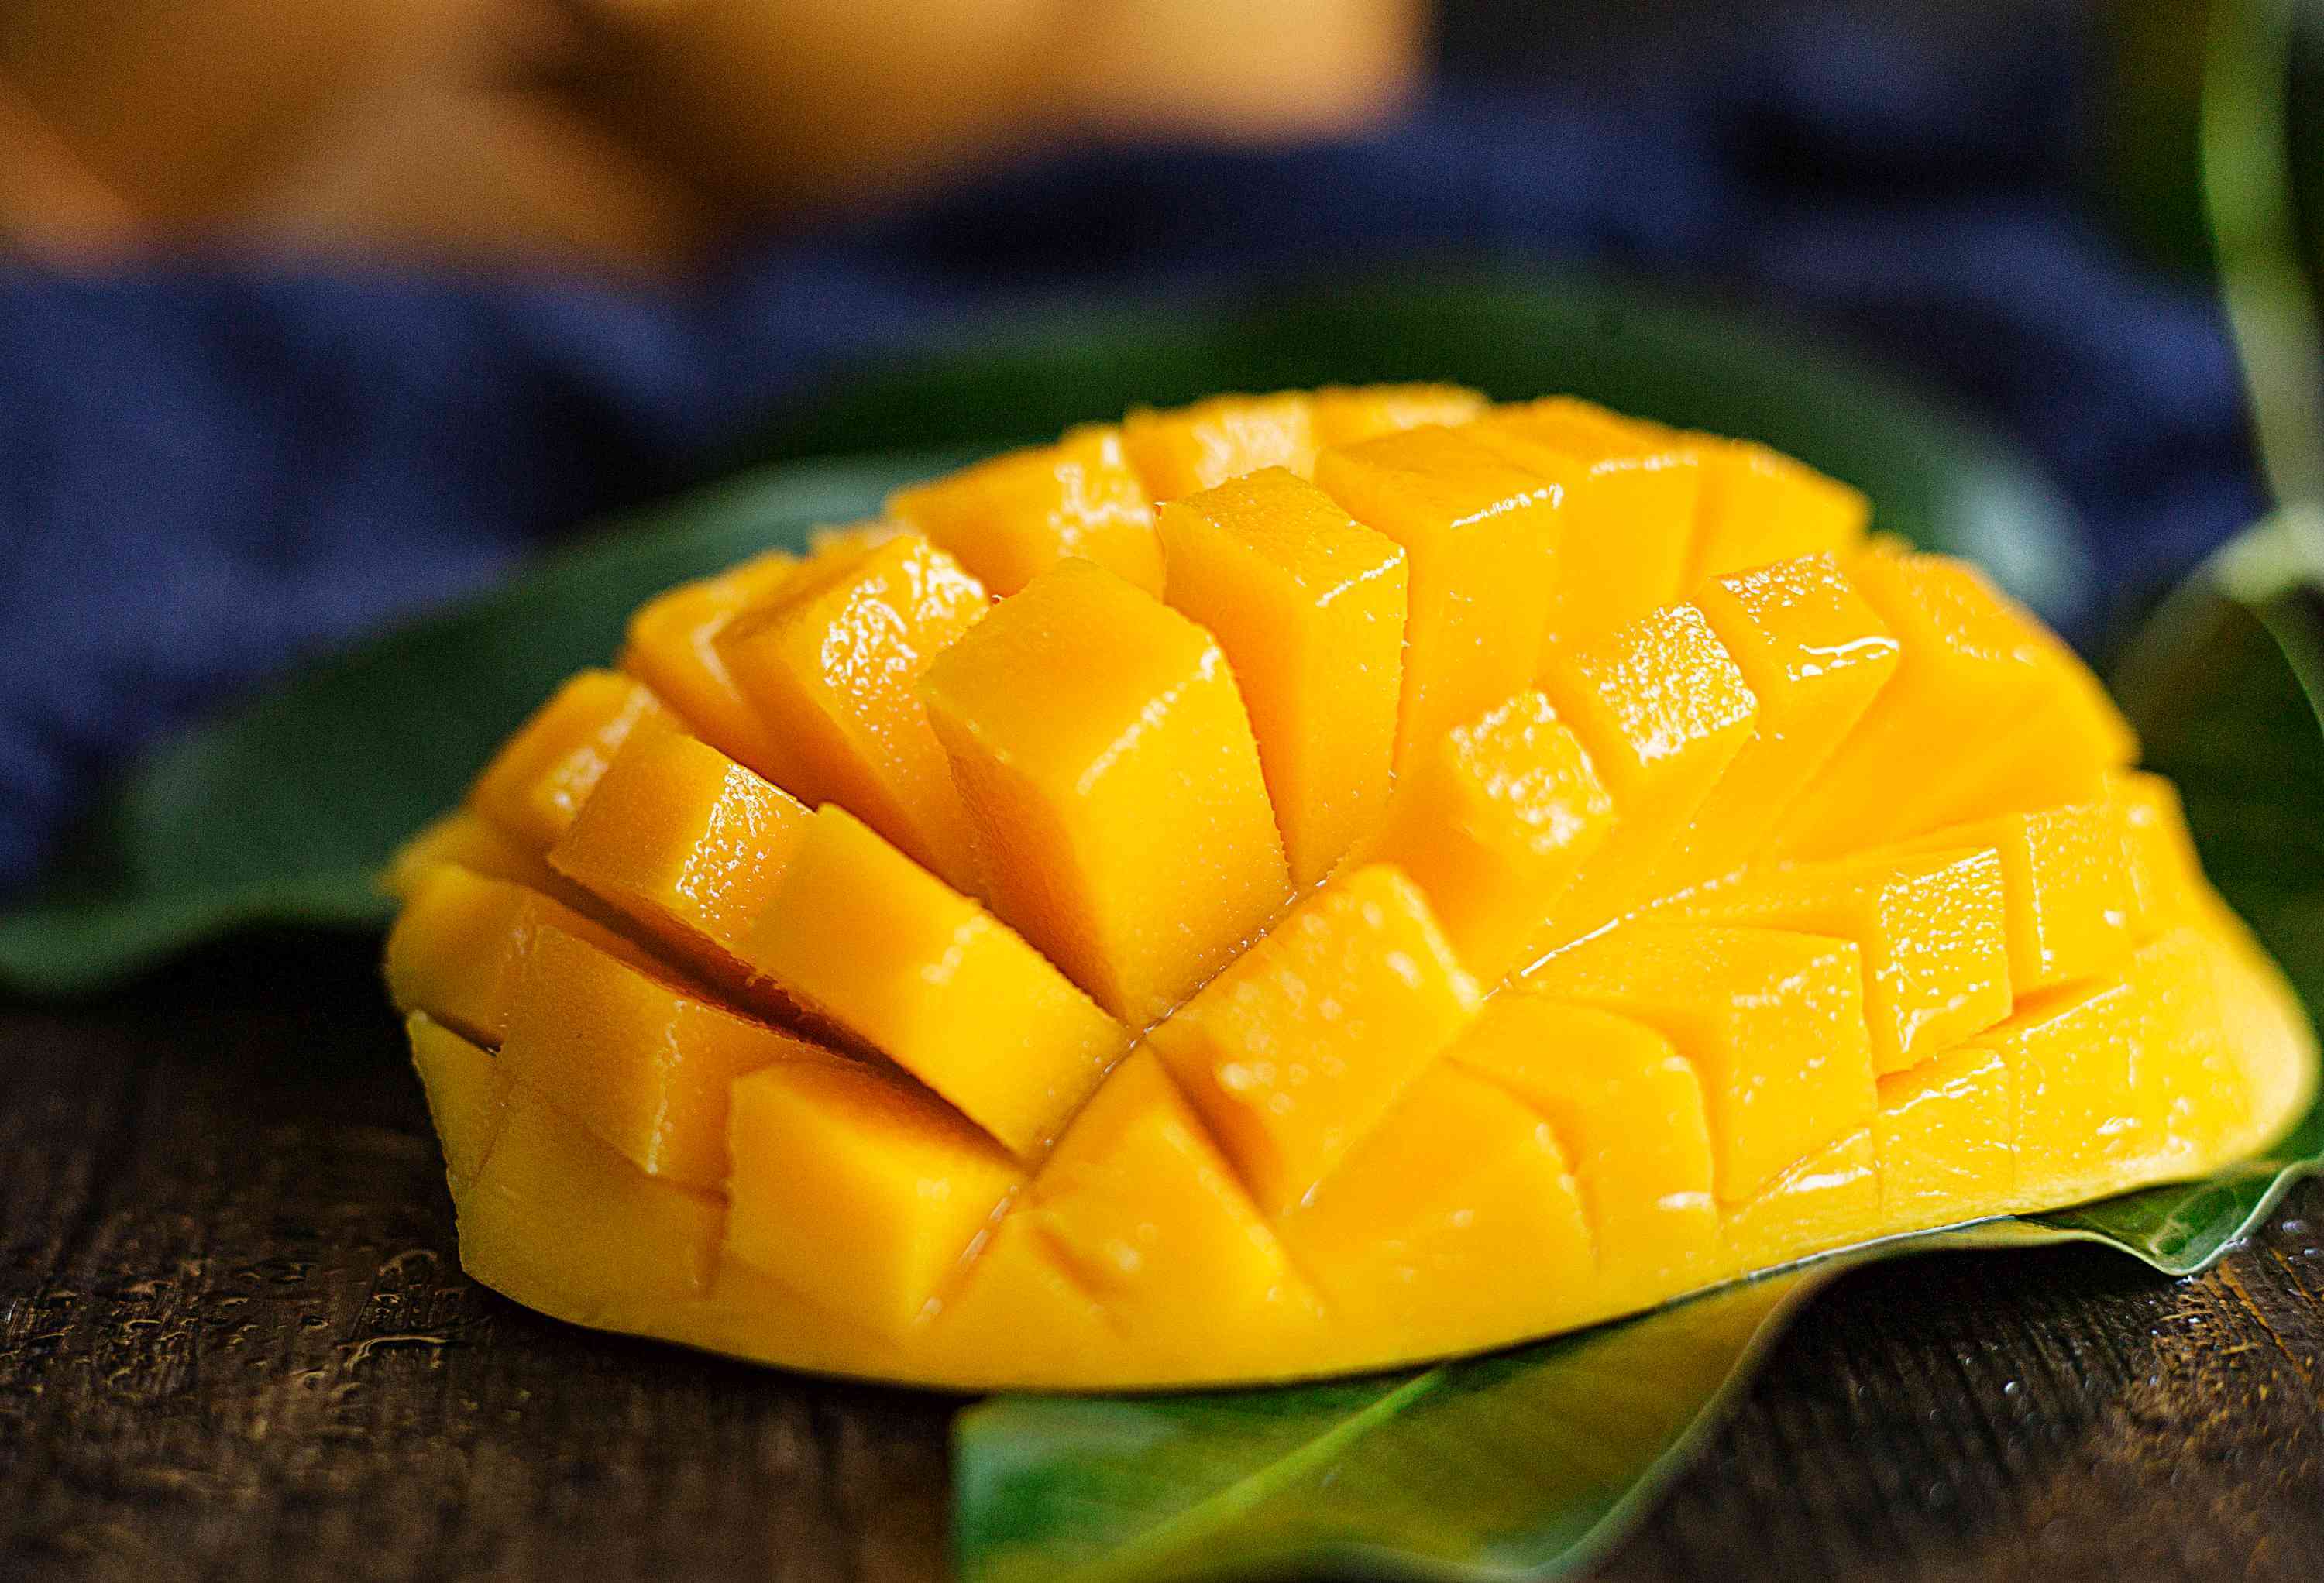 芒果中含有丰富的营养成分